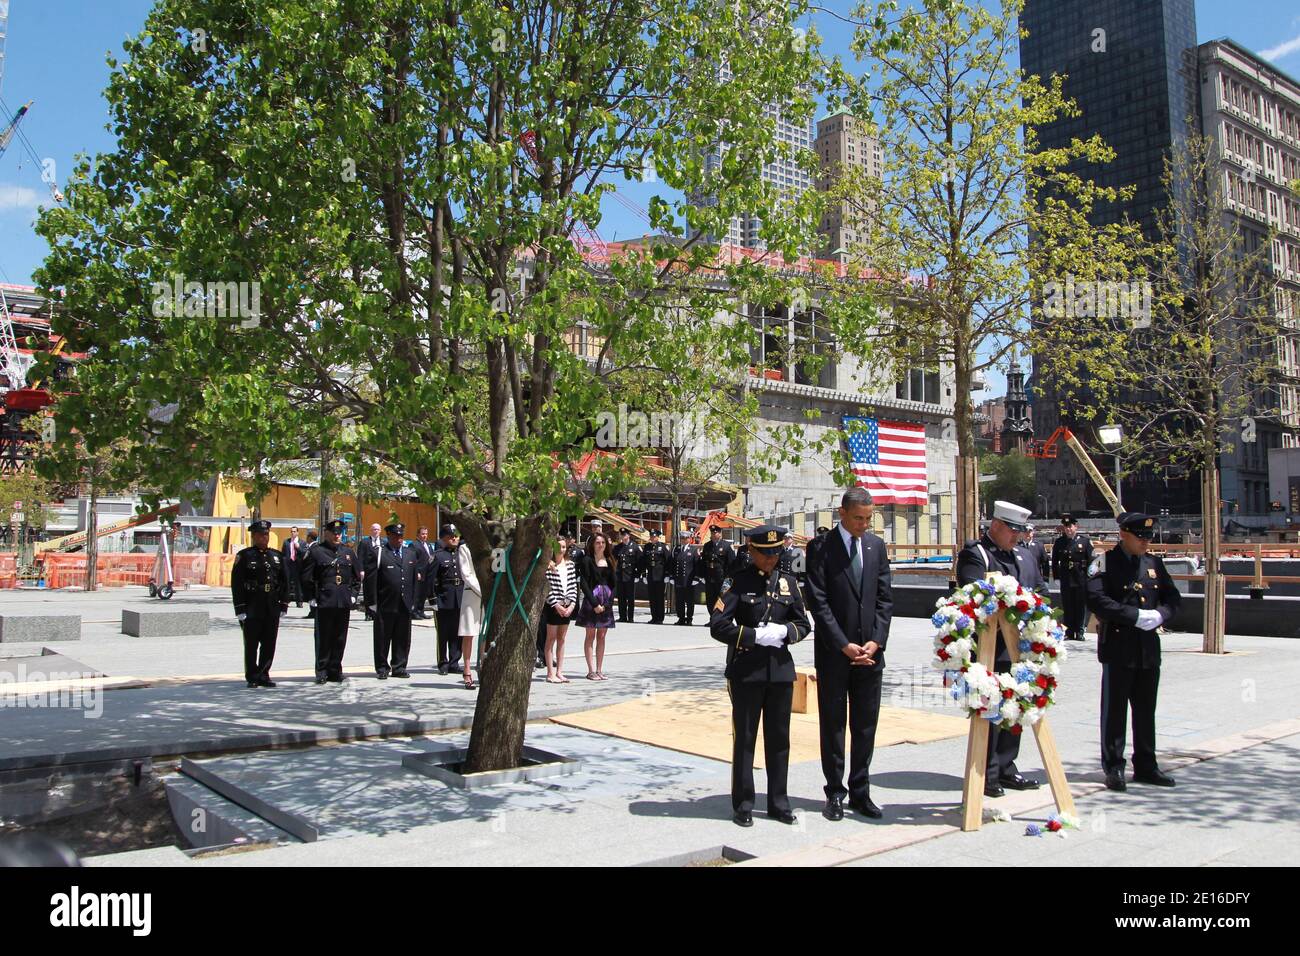 El presidente de los Estados Unidos, Barack Obama, camina con miembros del NYPD y del FDNY sosteniendo una corona mientras visita la Zona cero, el sitio de las antiguas Torres Gemelas, Días después de que Osama Bin Laden fuera asesinado por los sellos de la Marina de los Estados Unidos casi 10 años después de los ataques terroristas contra el World Trade Center en la ciudad de Nueva York, NY, EE.UU. El 5 de mayo de 2011.Foto de Mehdi Taamallah/ABACAPRESS.COM Foto de stock